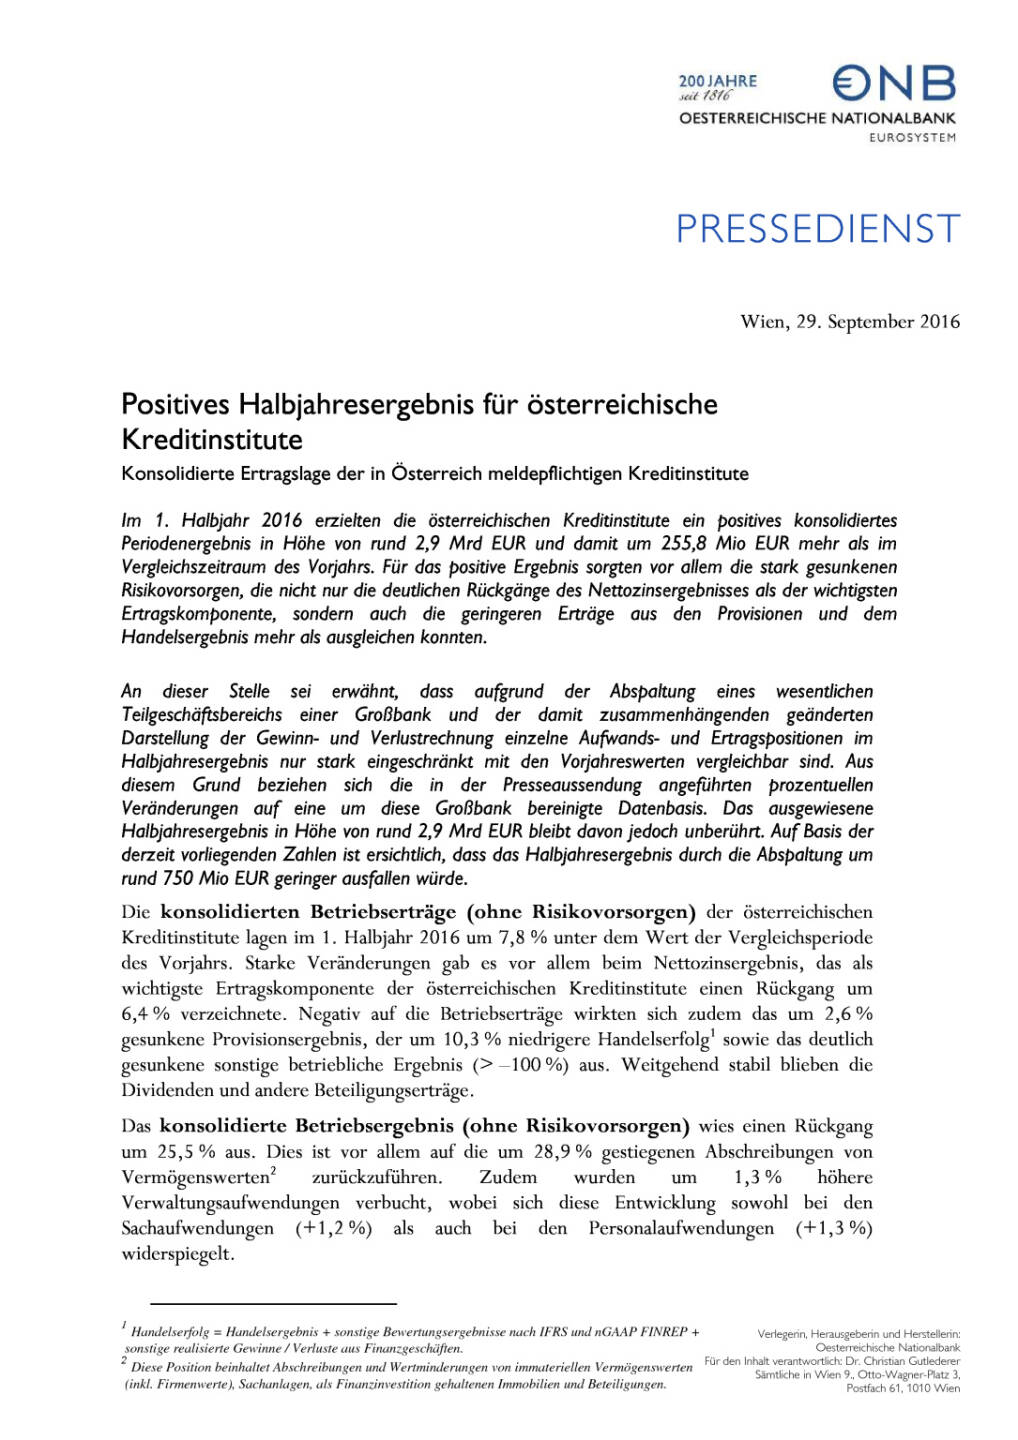 OeNB: Positives Halbjahresergebnis für österreichische Kreditinstitute, Seite 1/2, komplettes Dokument unter http://boerse-social.com/static/uploads/file_1850_oenb_positives_halbjahresergebnis_fur_osterreichische_kreditinstitute.pdf